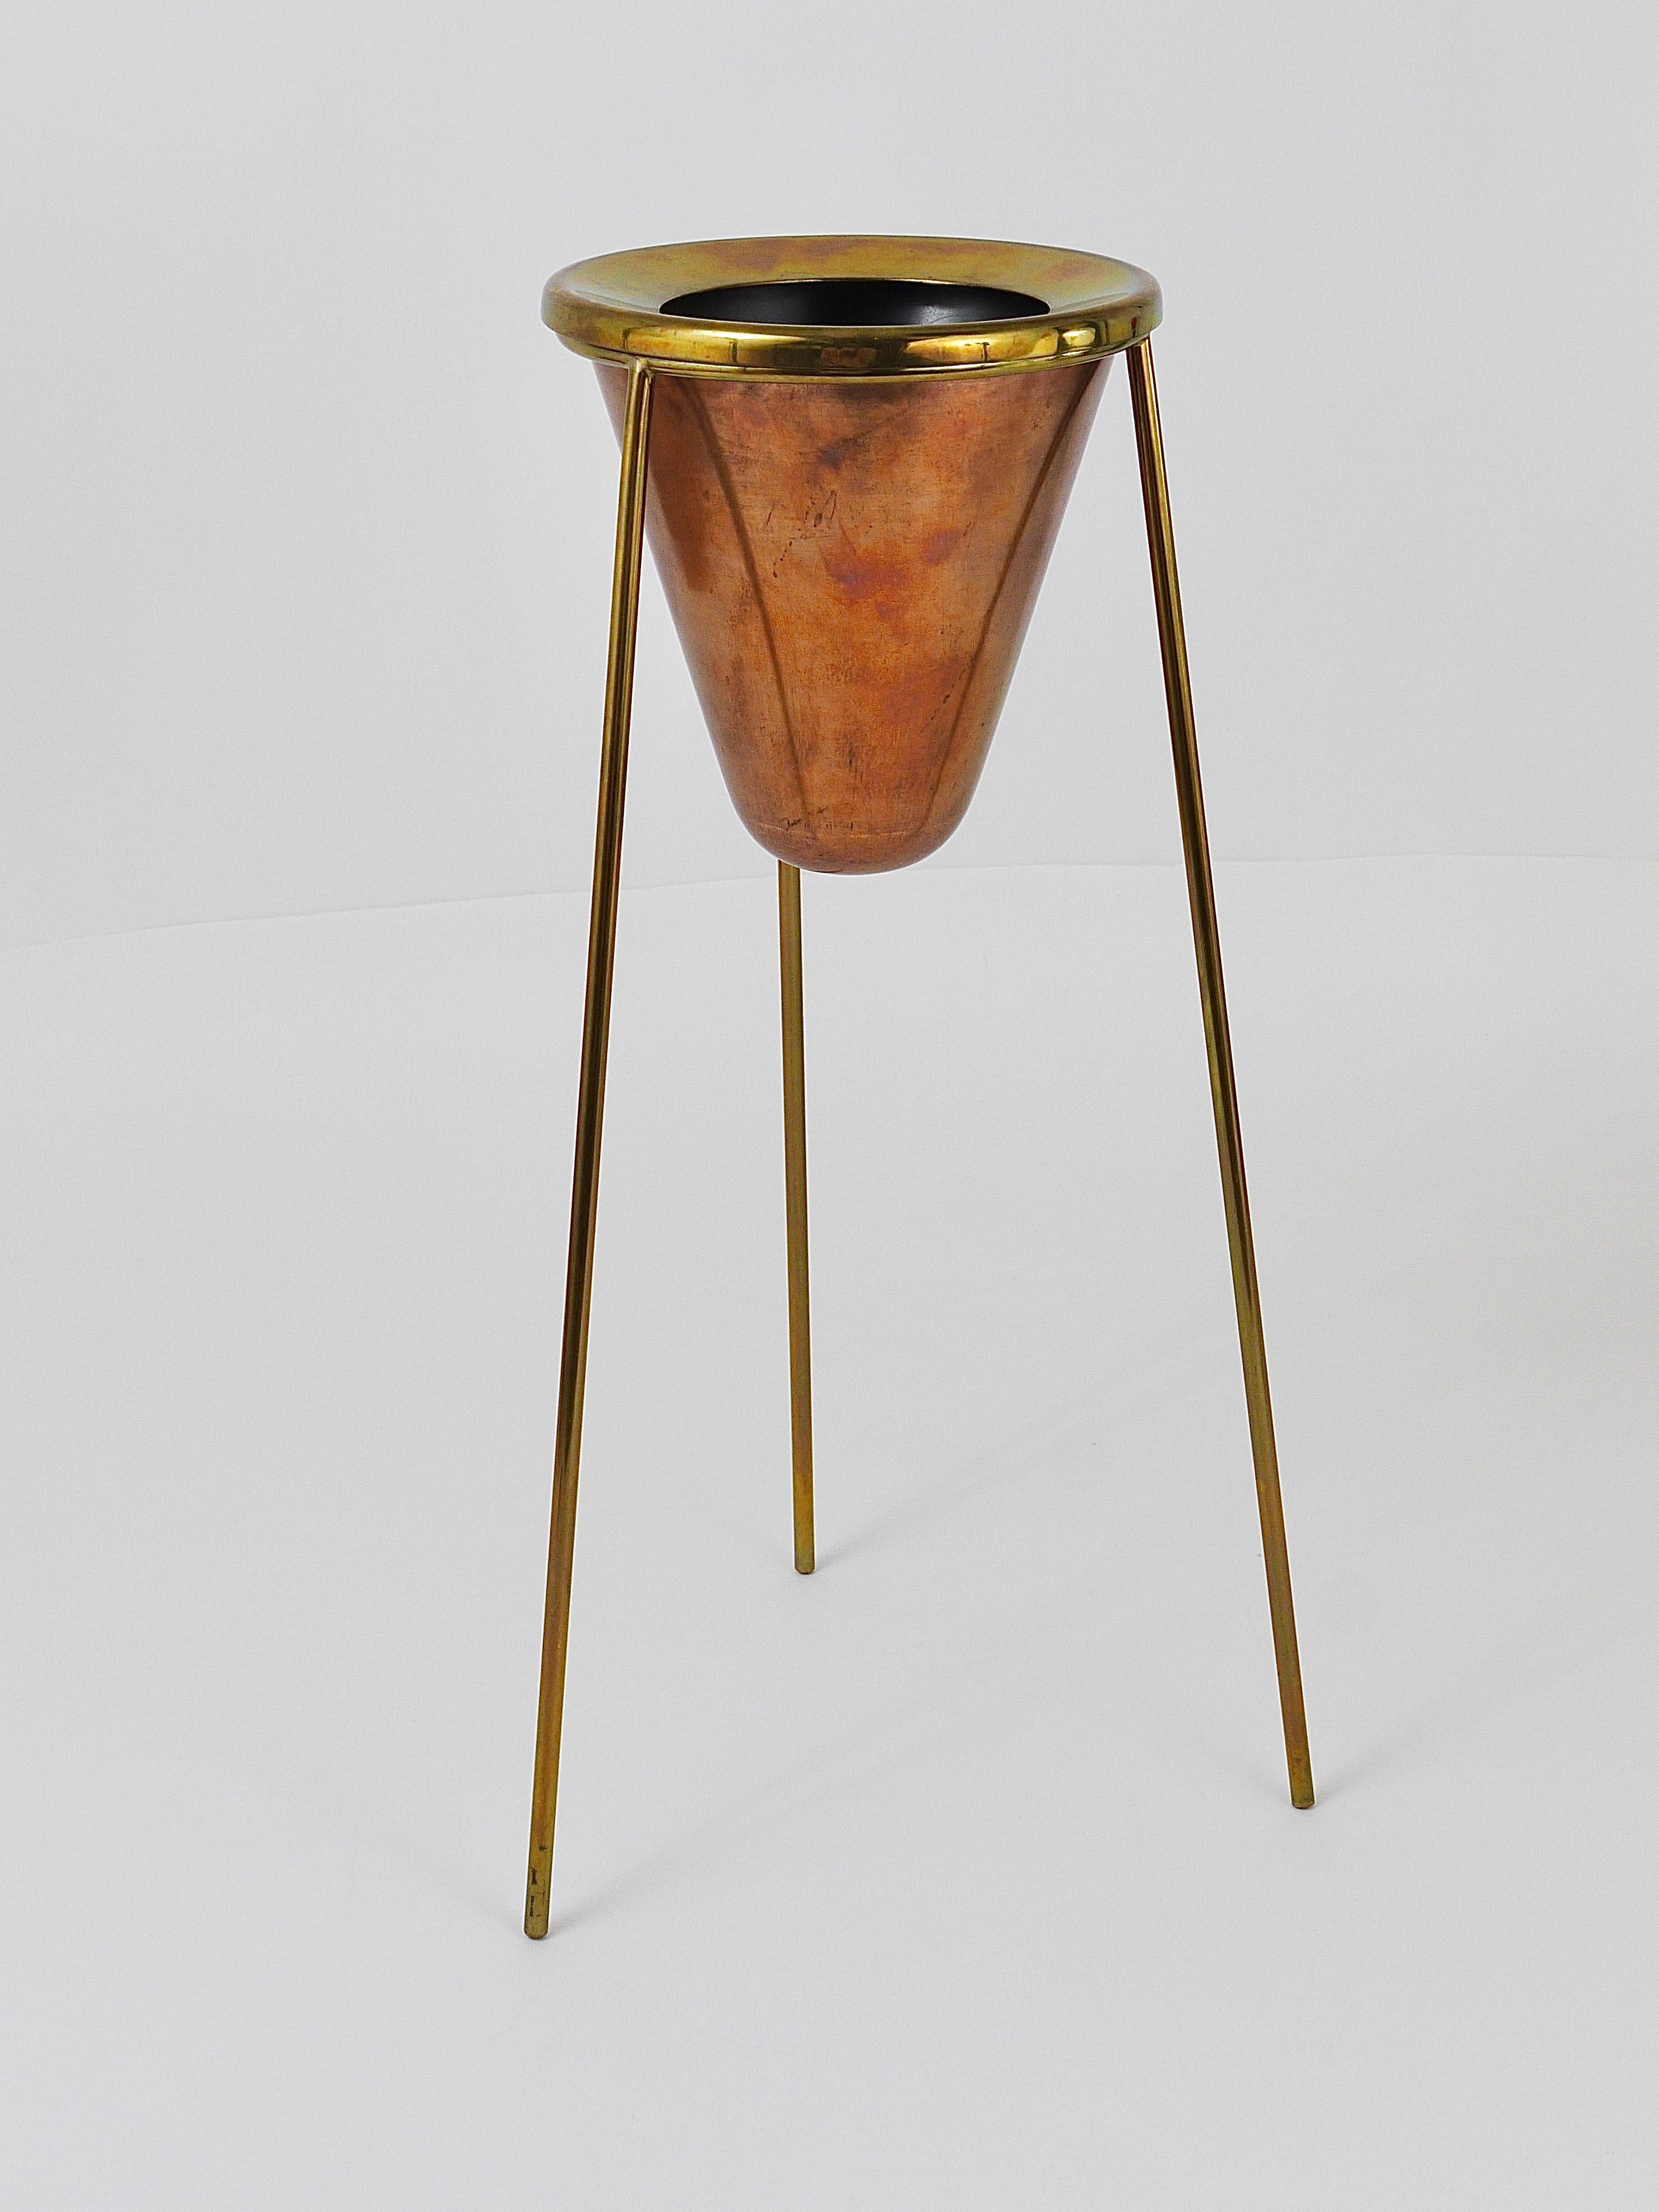 Rare Carl Aubock Copper & Brass Tripod Floor Ashtray, Austria, 1950s For Sale 13